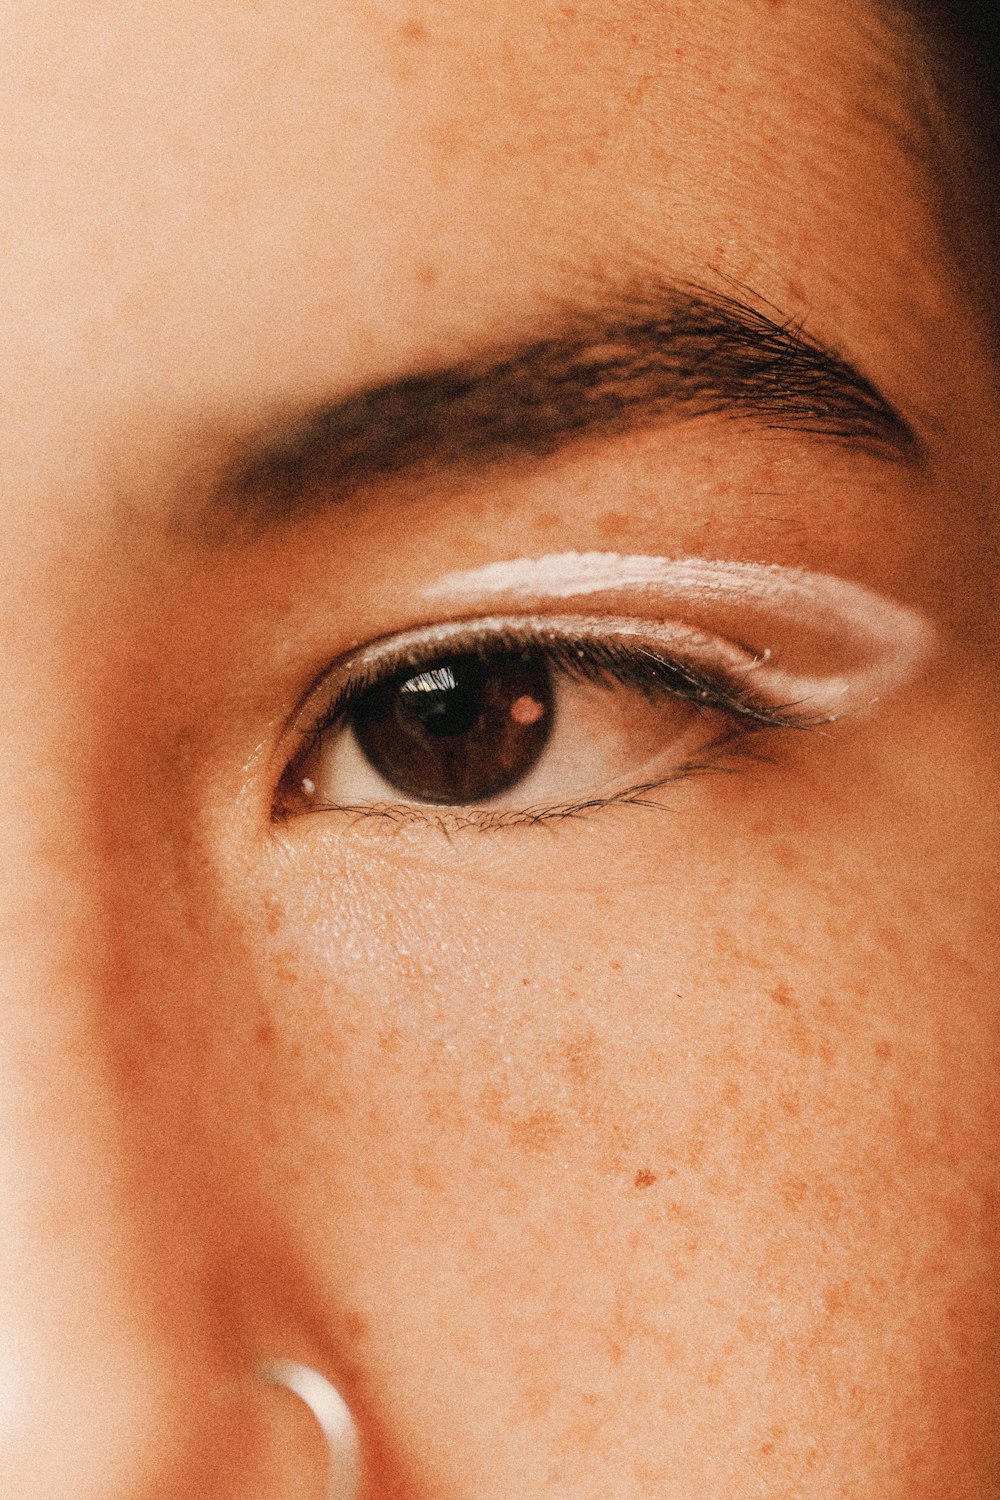 l'occhio sinistro della persona